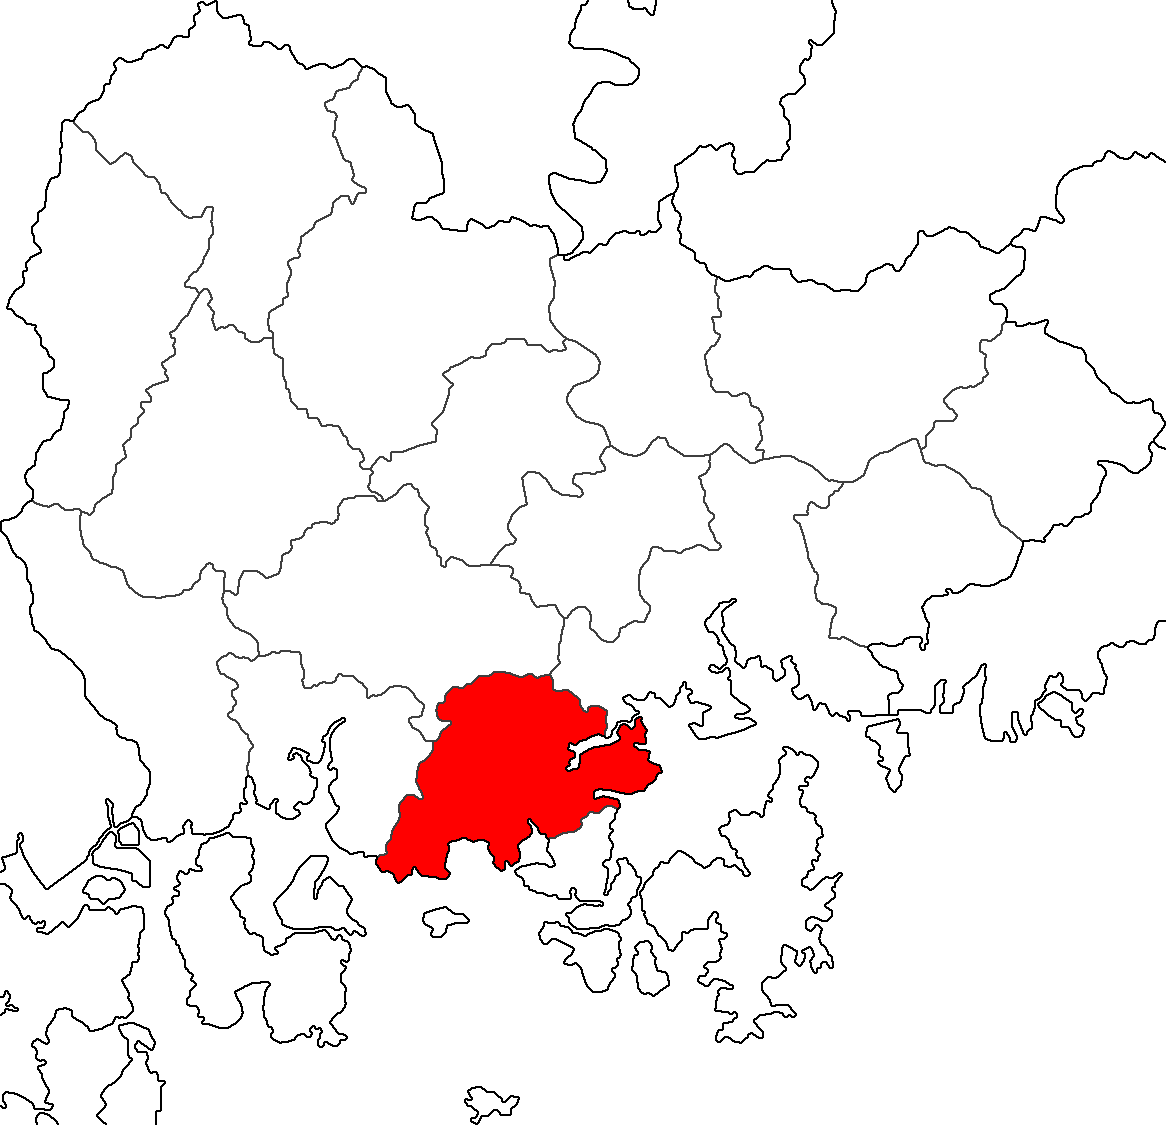 Map Goseong-gun.png